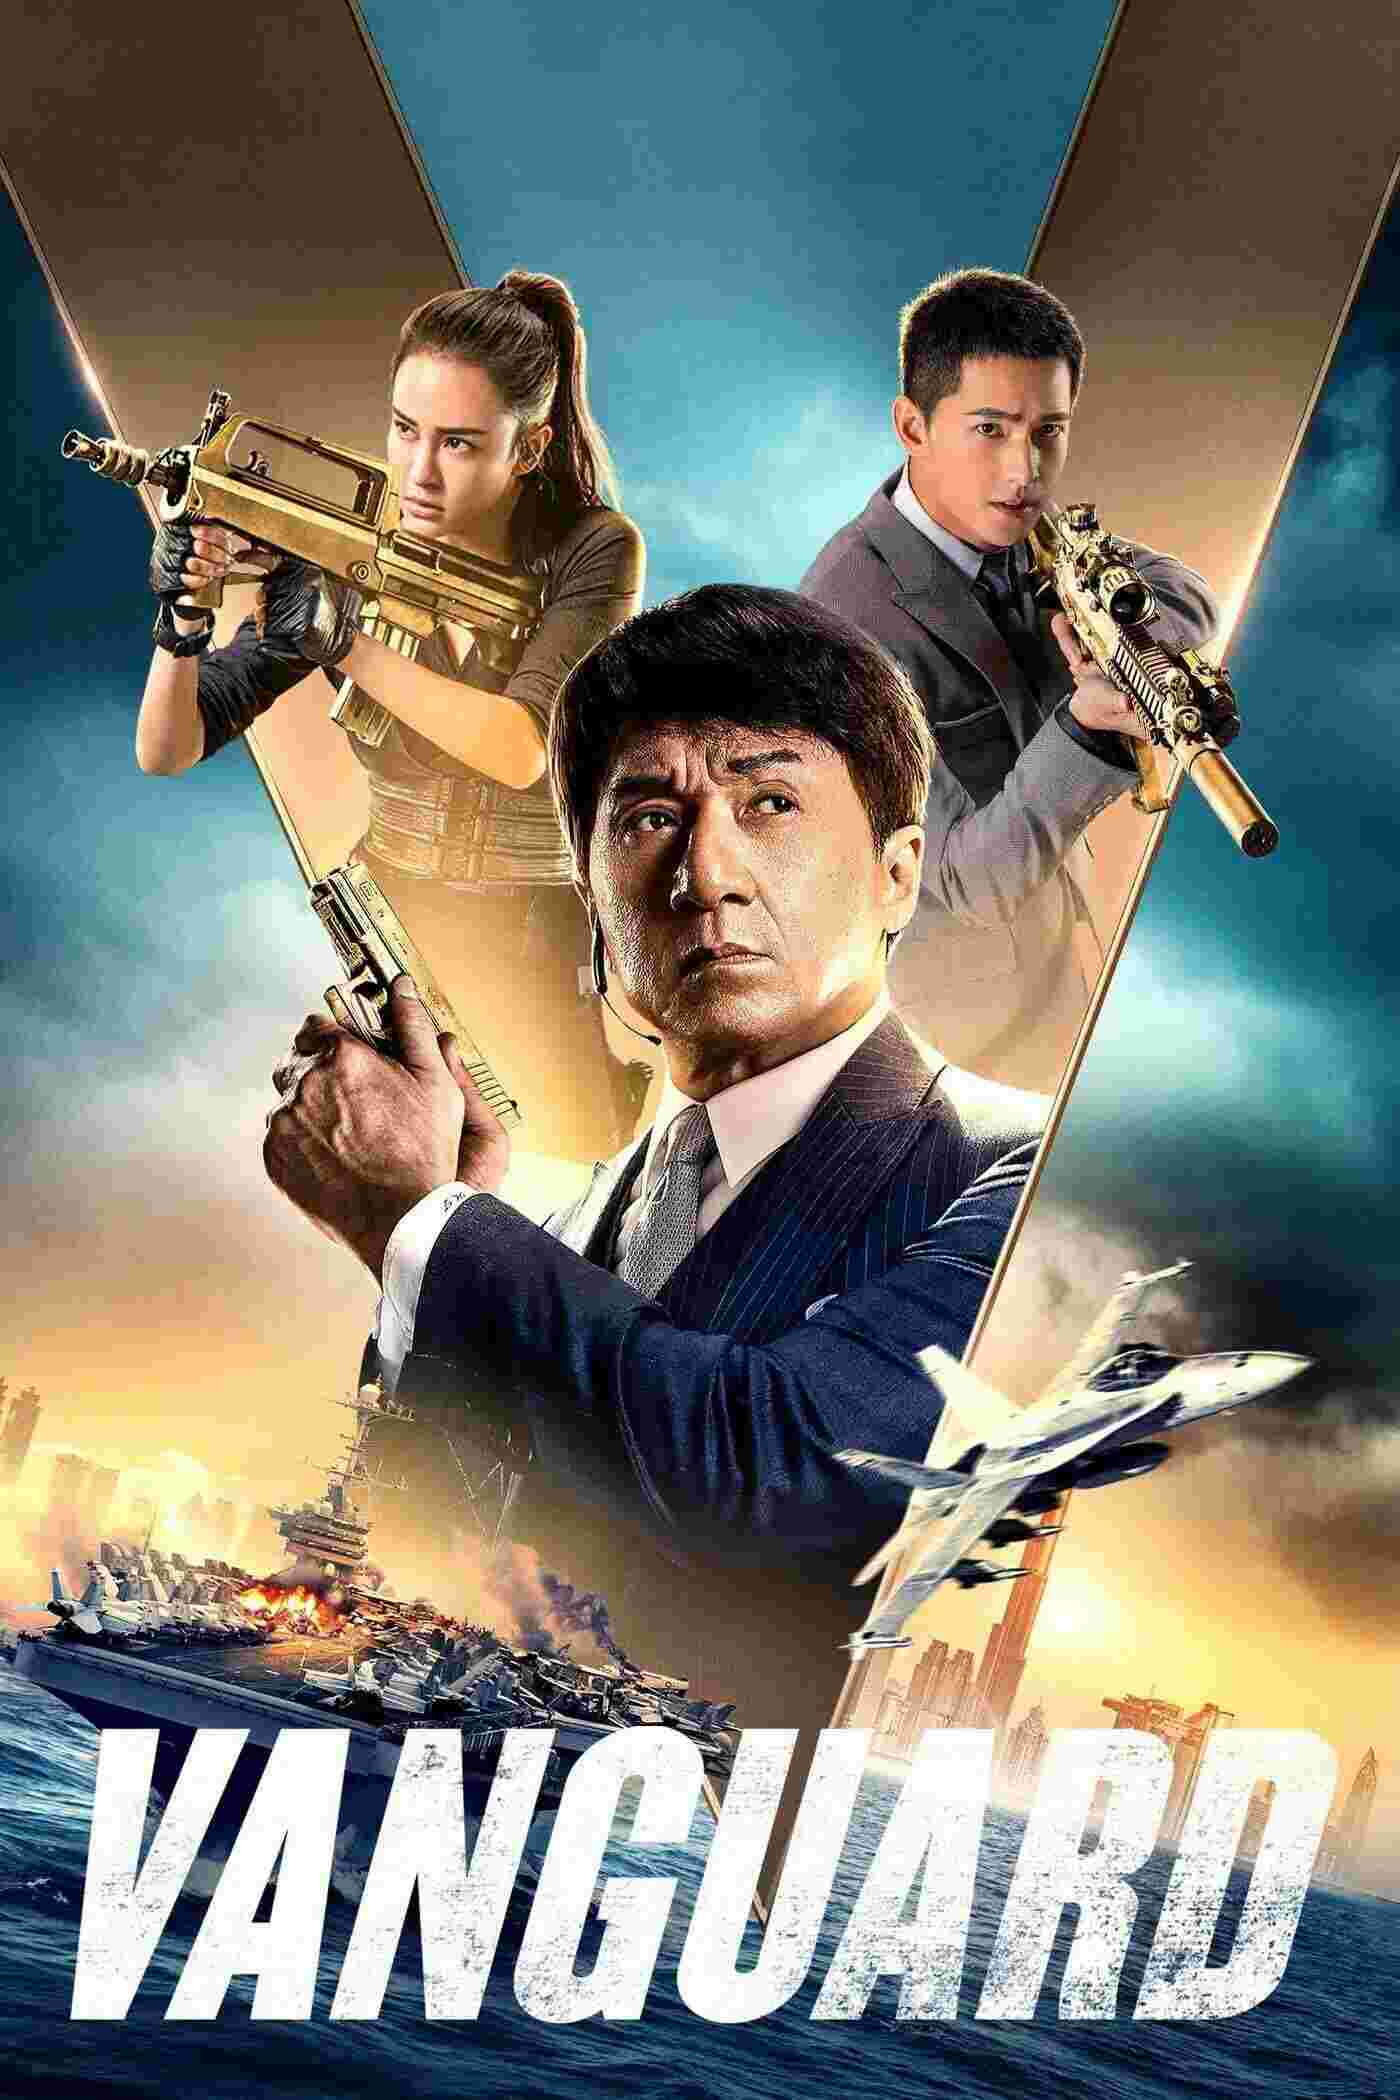 Vanguard (2020) Jackie Chan